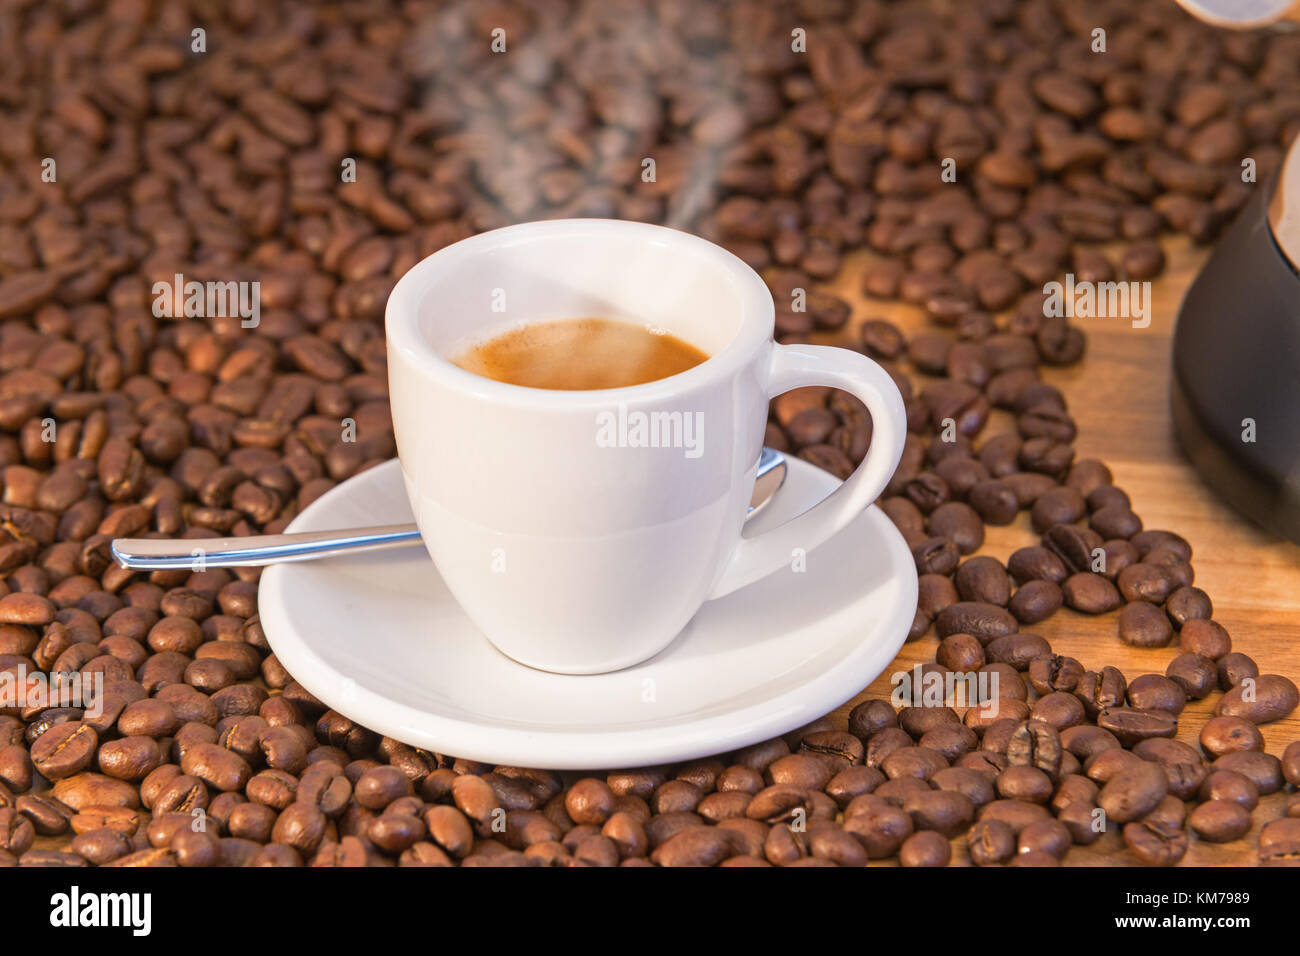 Espresso preparation at home Stock Photo